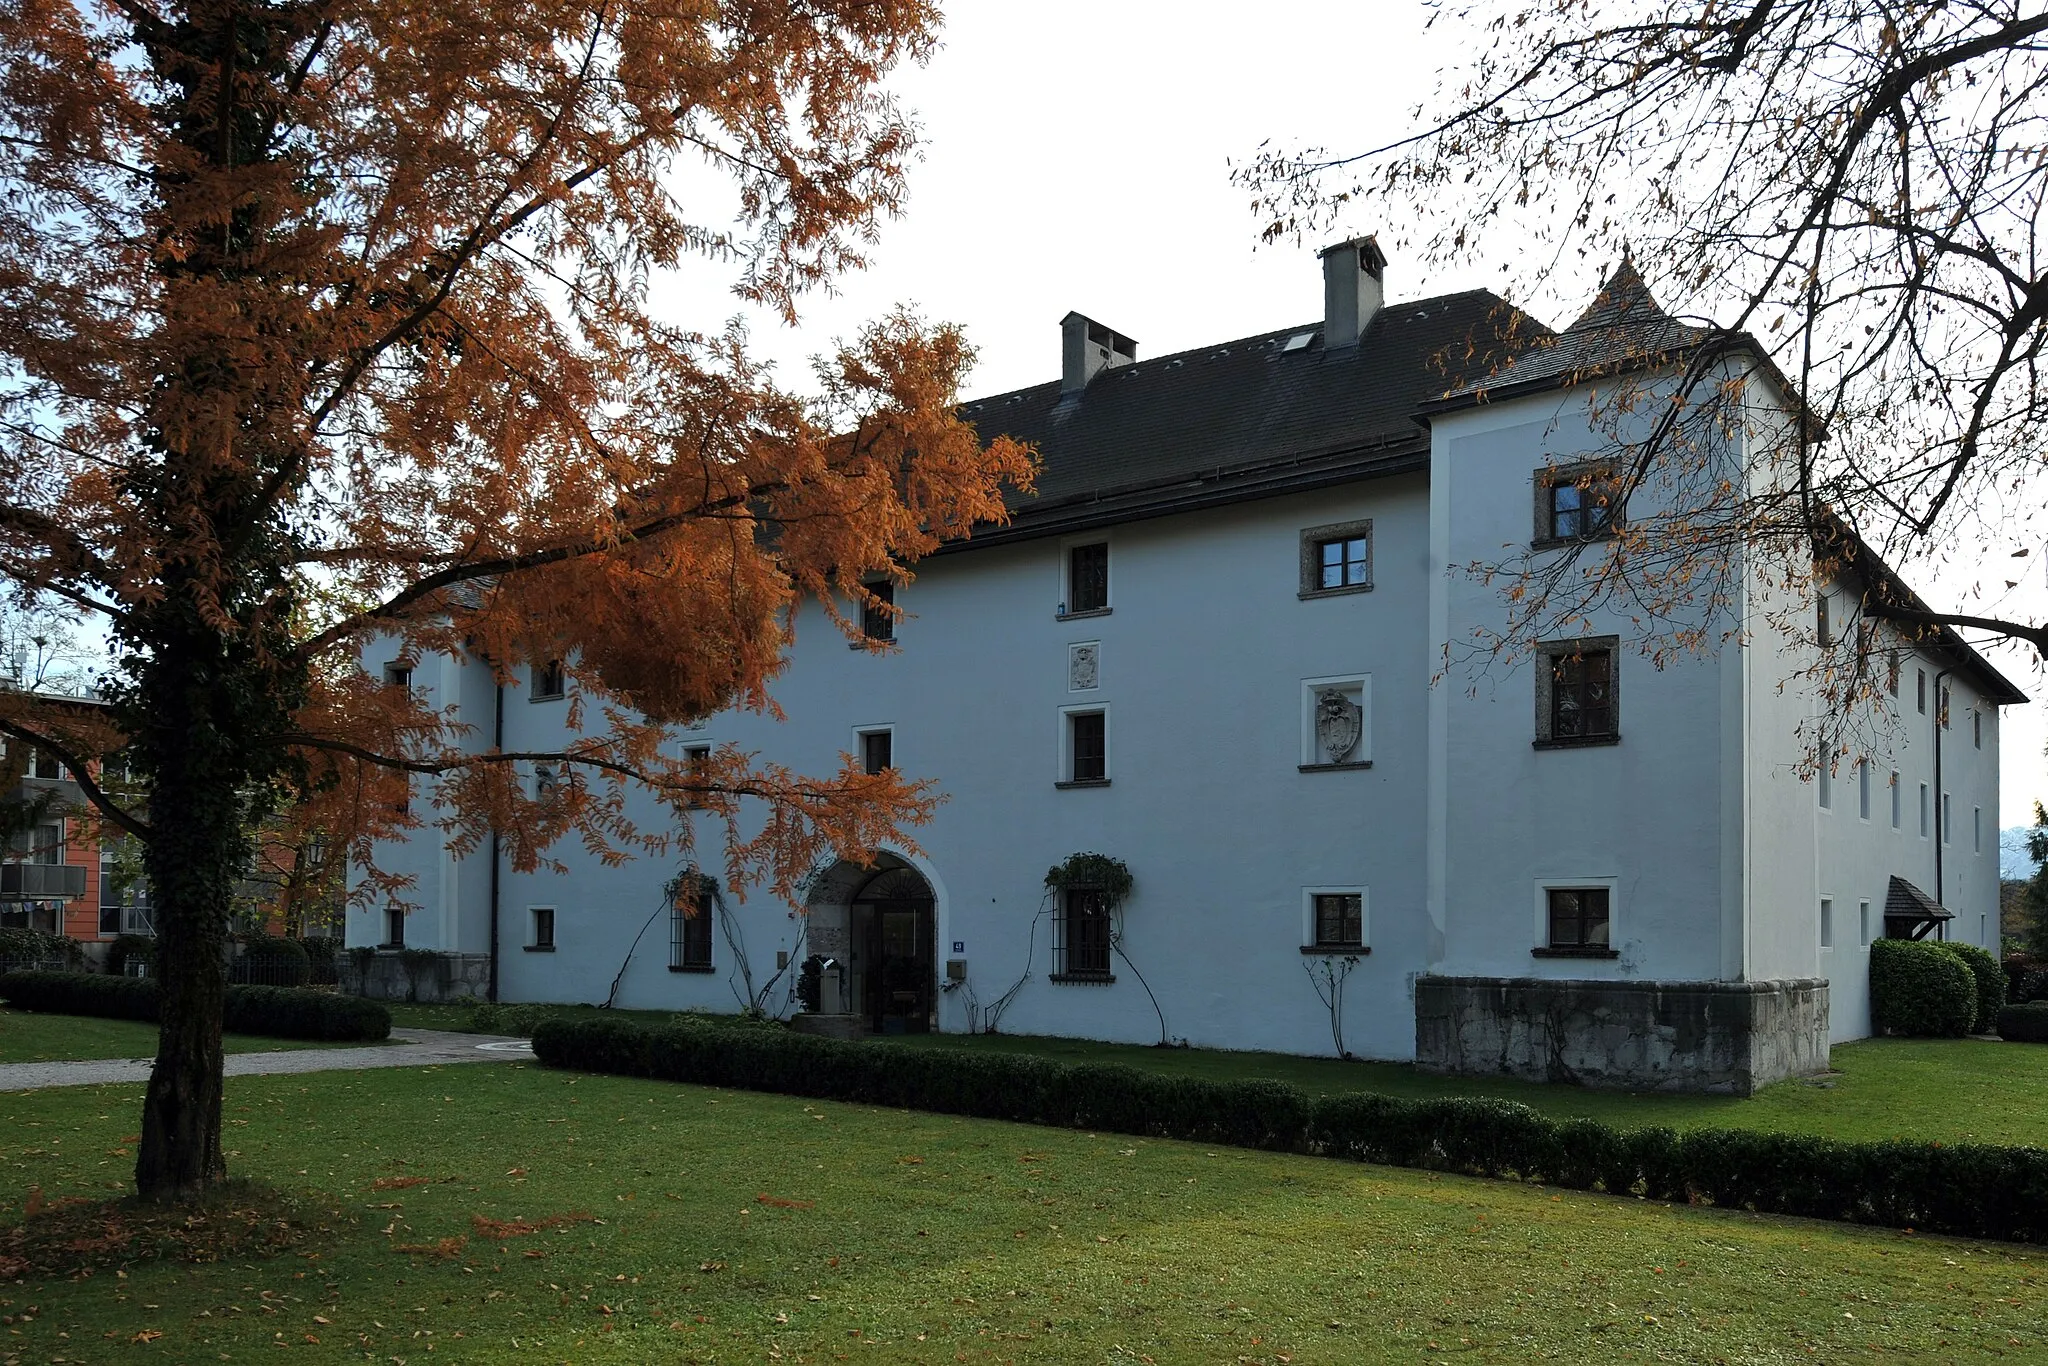 Bild von Salzburg